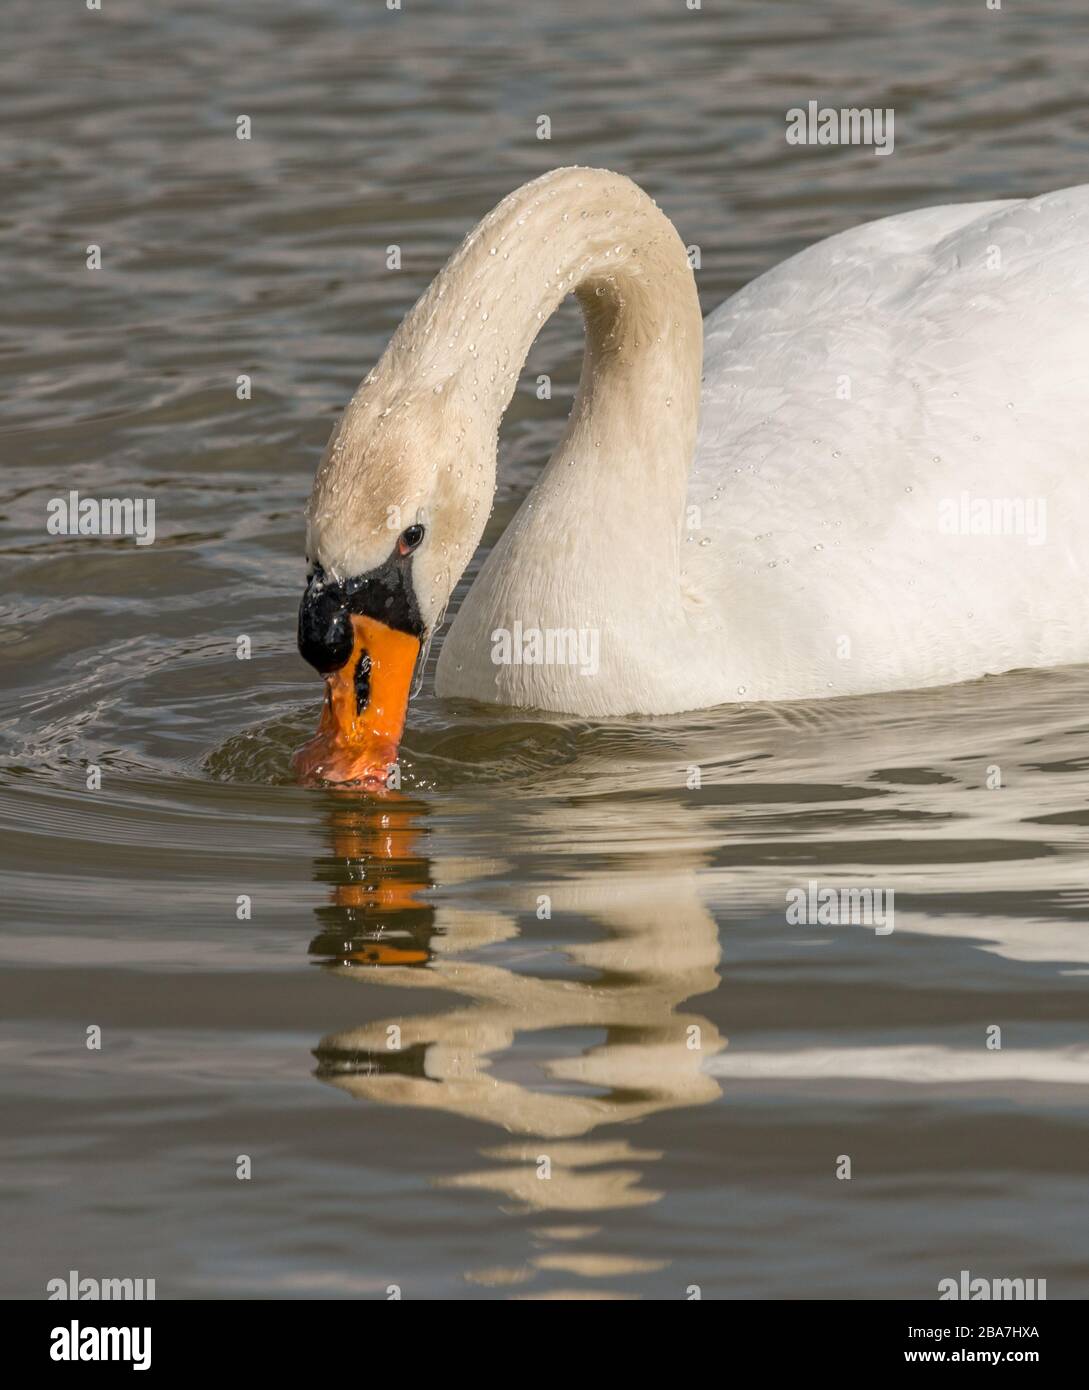 white swan bird swimming in the water diving its beak, animal wild Stock Photo